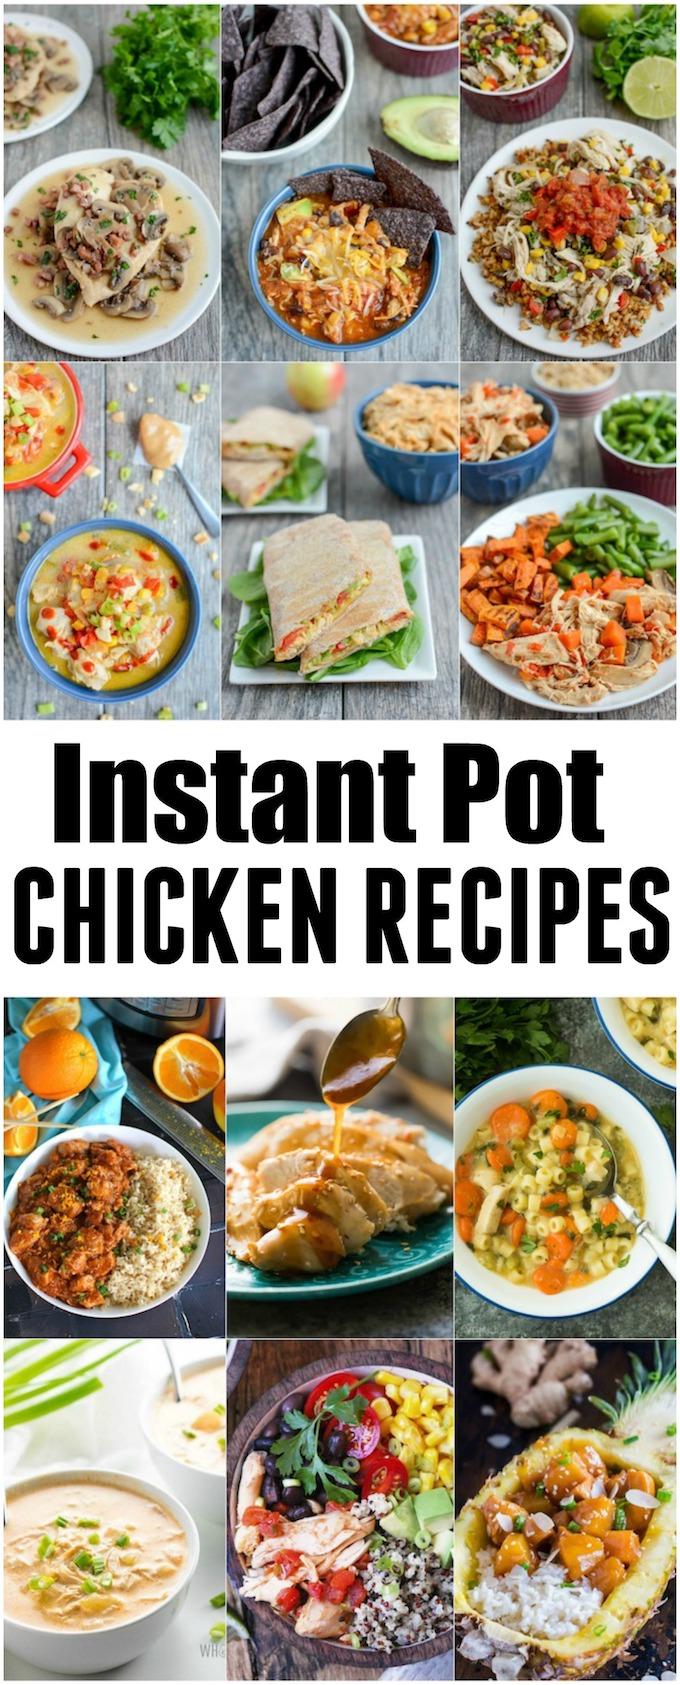 Instant Pot Chicken Recipes | Healthy Dinner Ideas